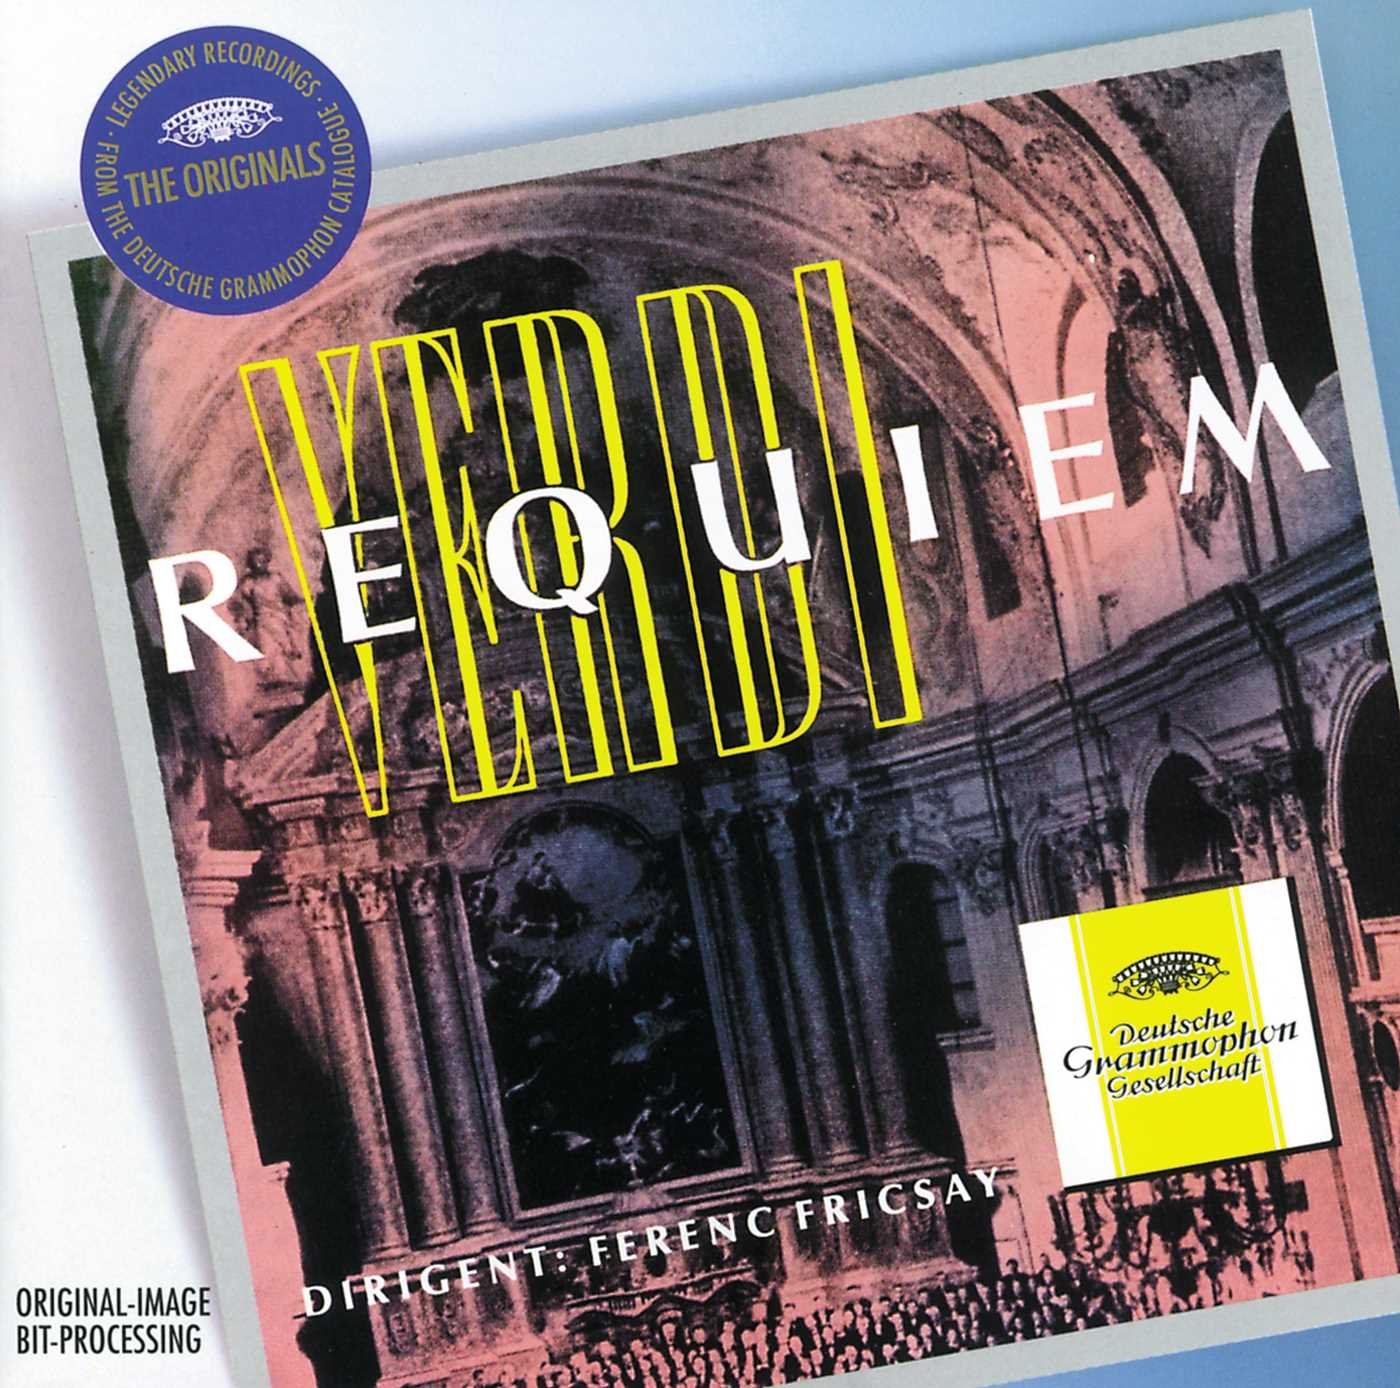 Verdi: Requiem | Giuseppe Verdi